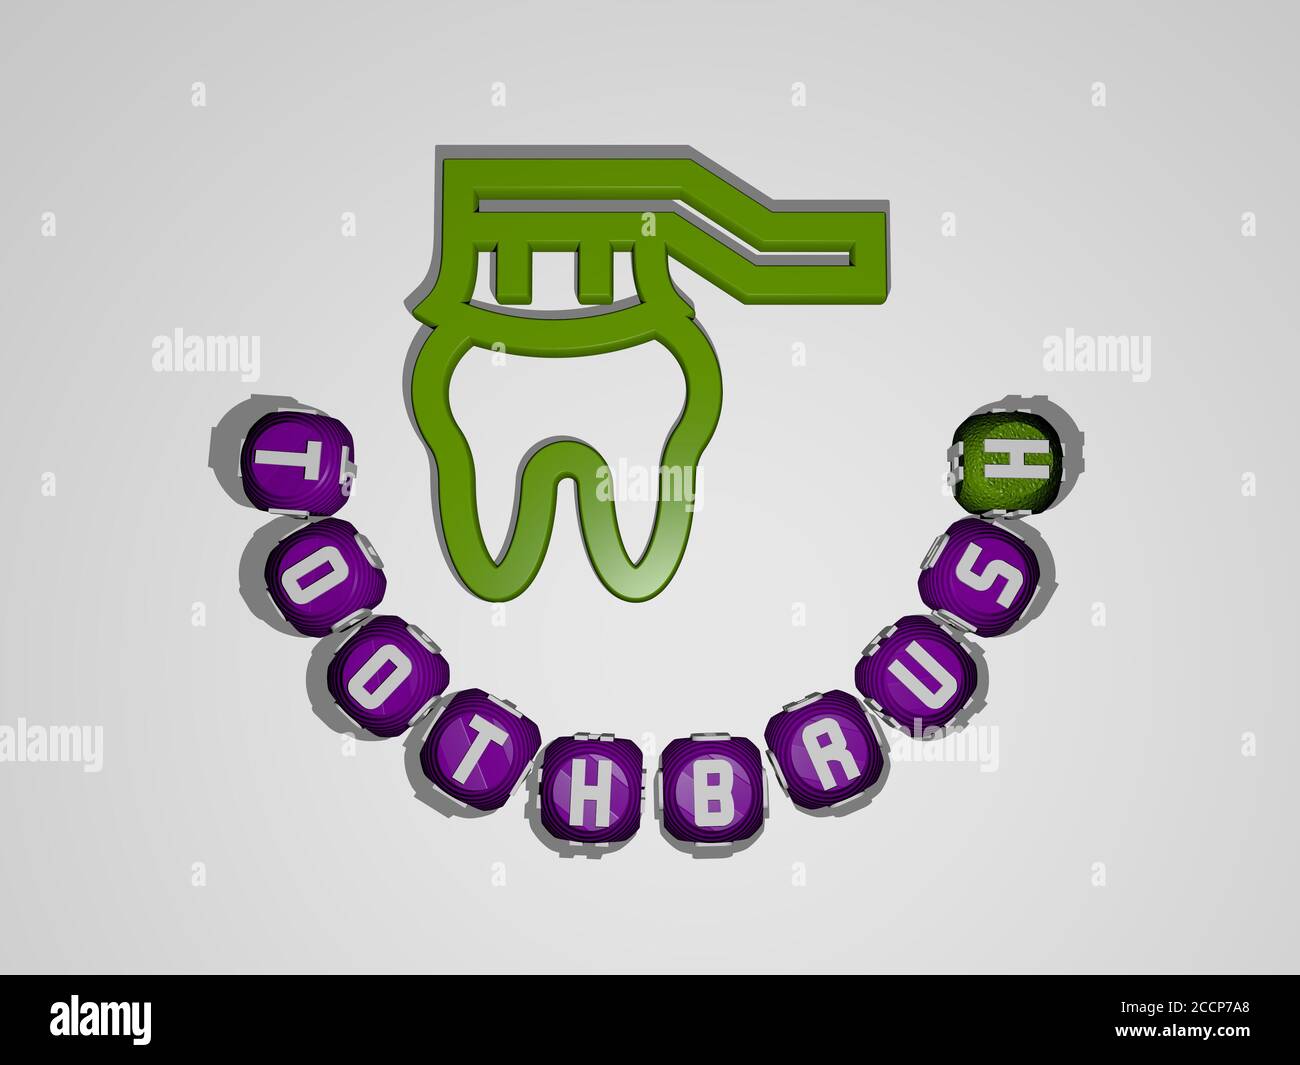 Texte de brosse à dents autour de l'icône 3D, illustration 3D Banque D'Images